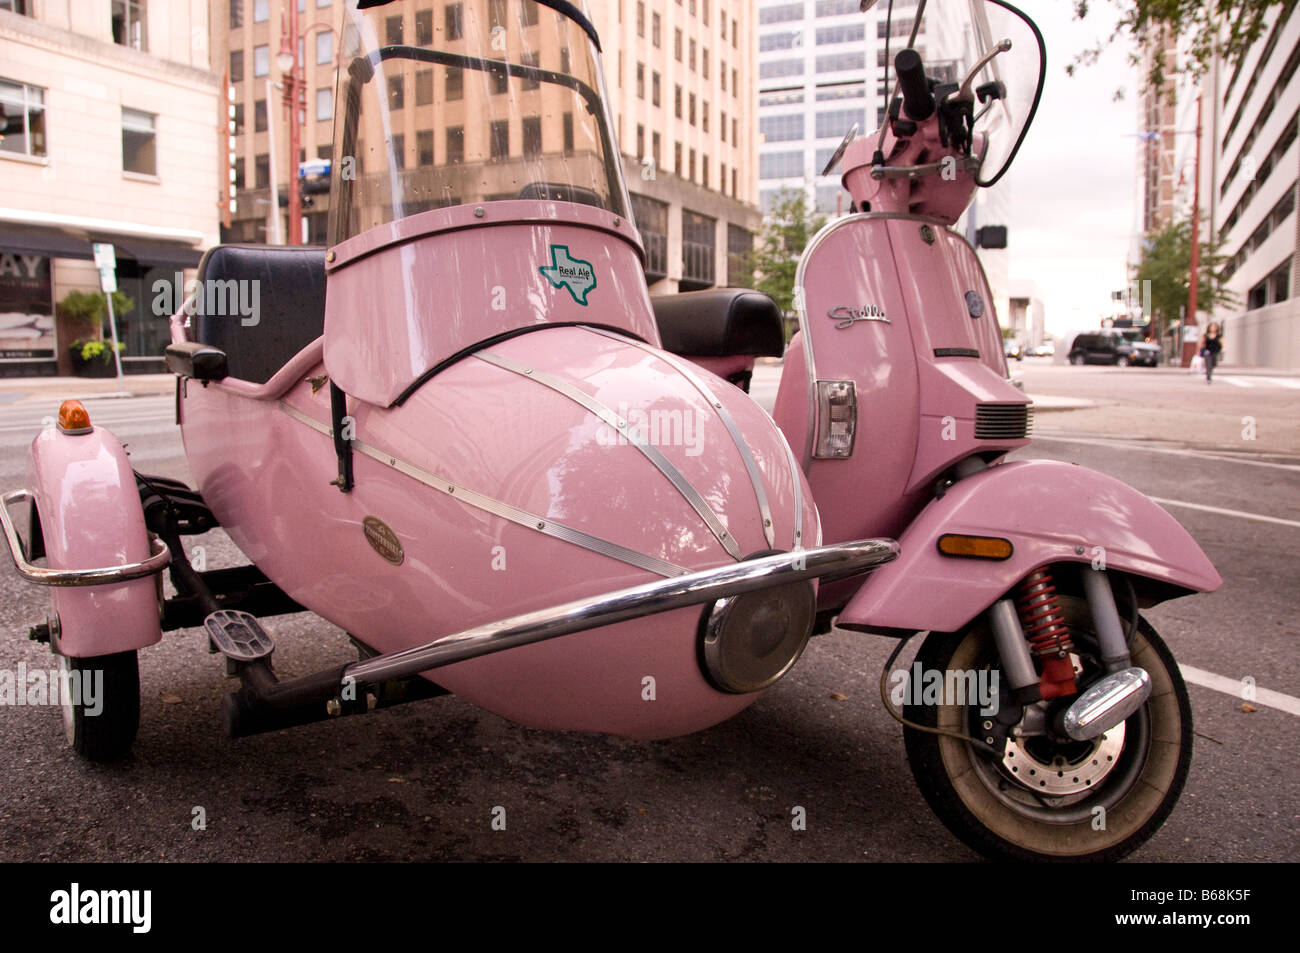 Pink motor scooter -Fotos und -Bildmaterial in hoher Auflösung – Alamy